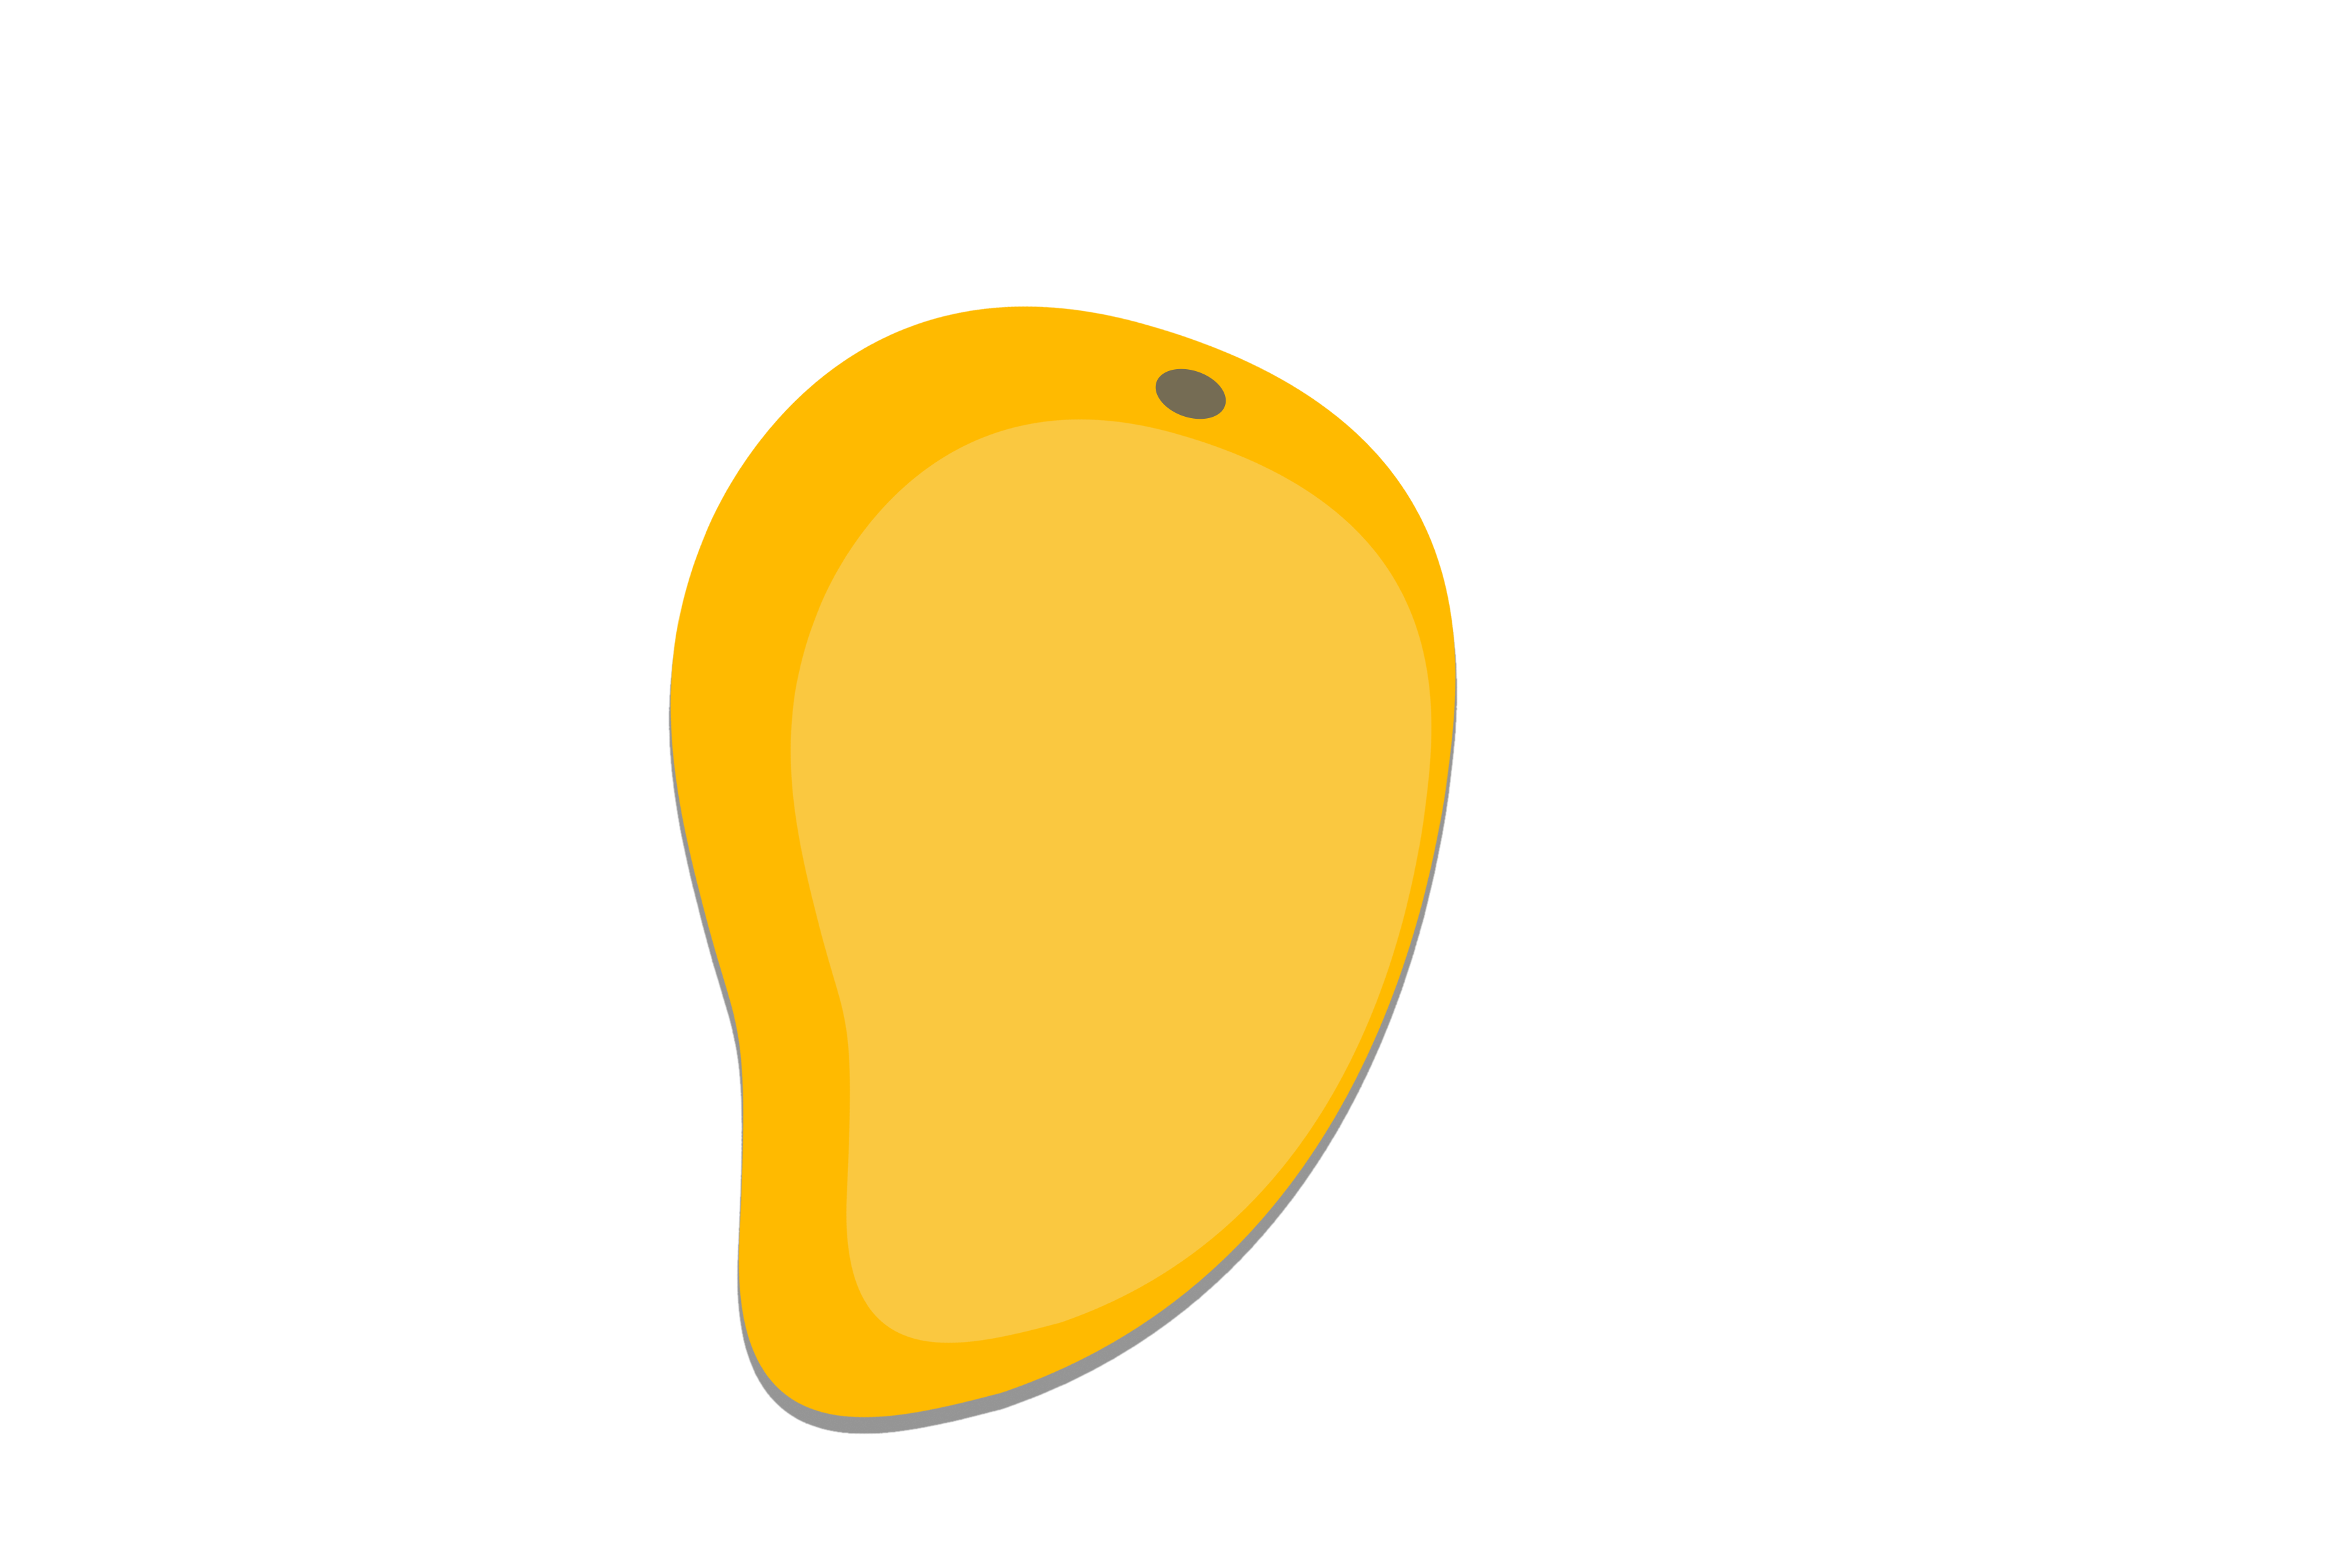 mango-fruit-image-free-download